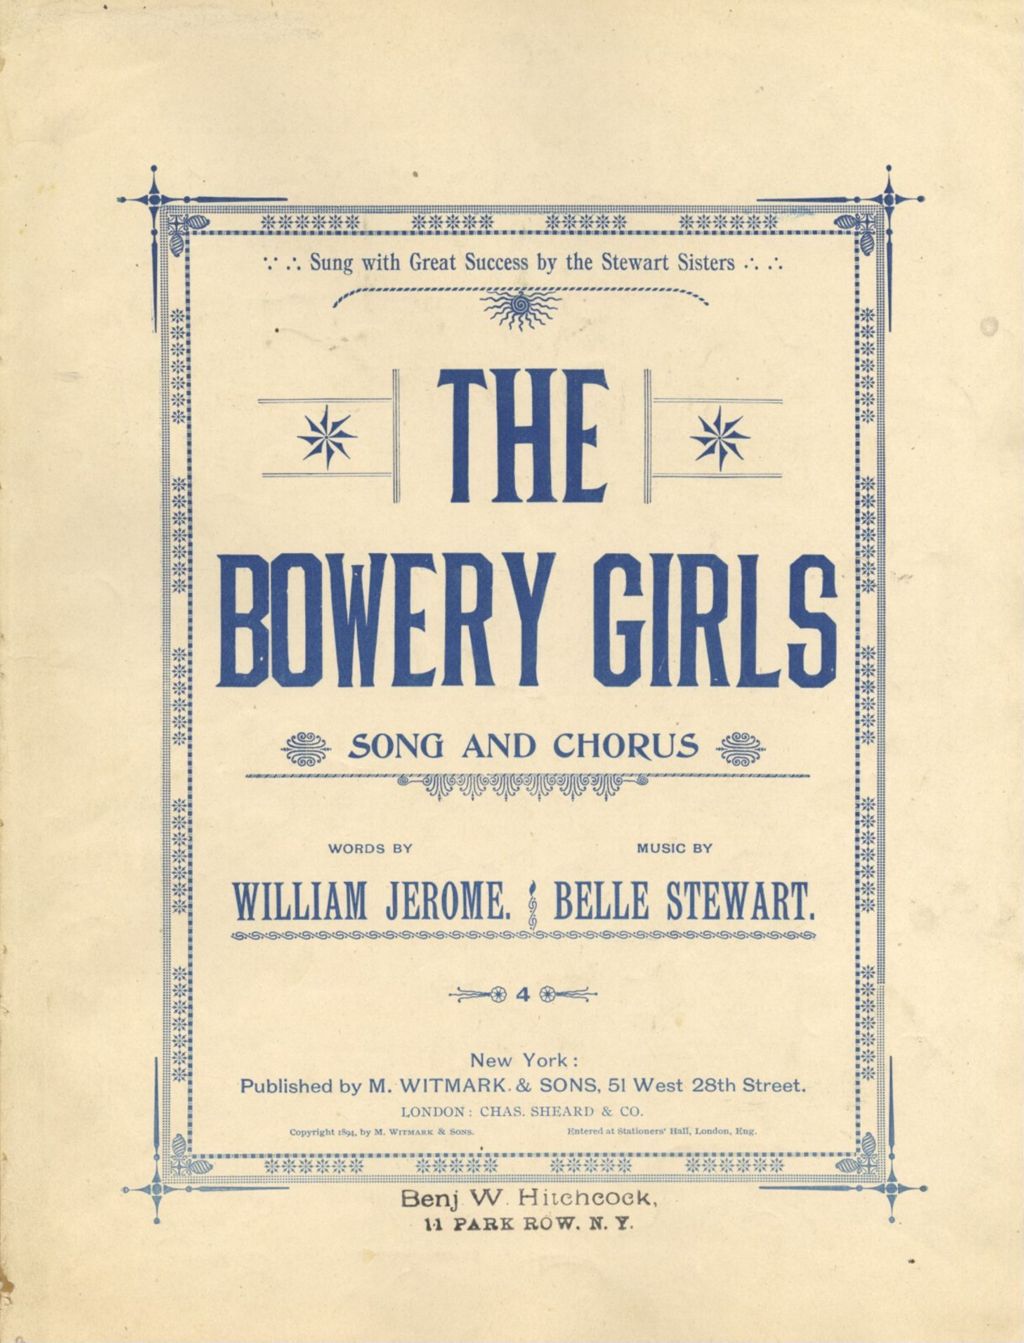 Miniature of Bowery Girls